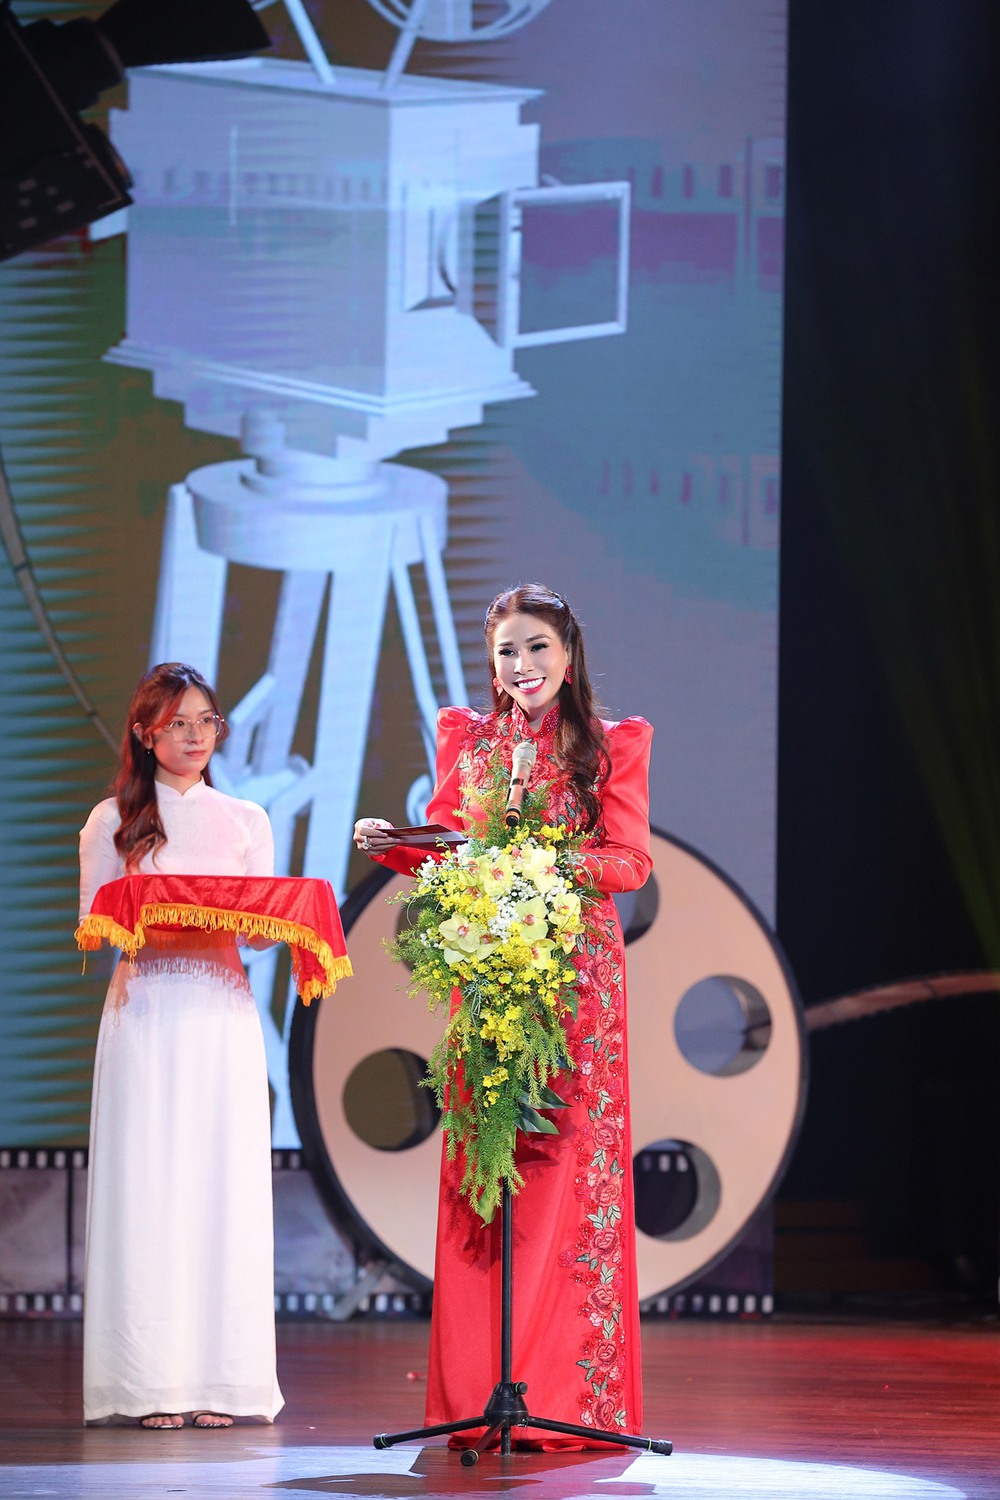 Diễn viên Lý Hùng - Lý Hương trao giải Lễ bế mạc Liên hoan phim ngắn TPHCM lần thứ 1 - Ảnh 5.